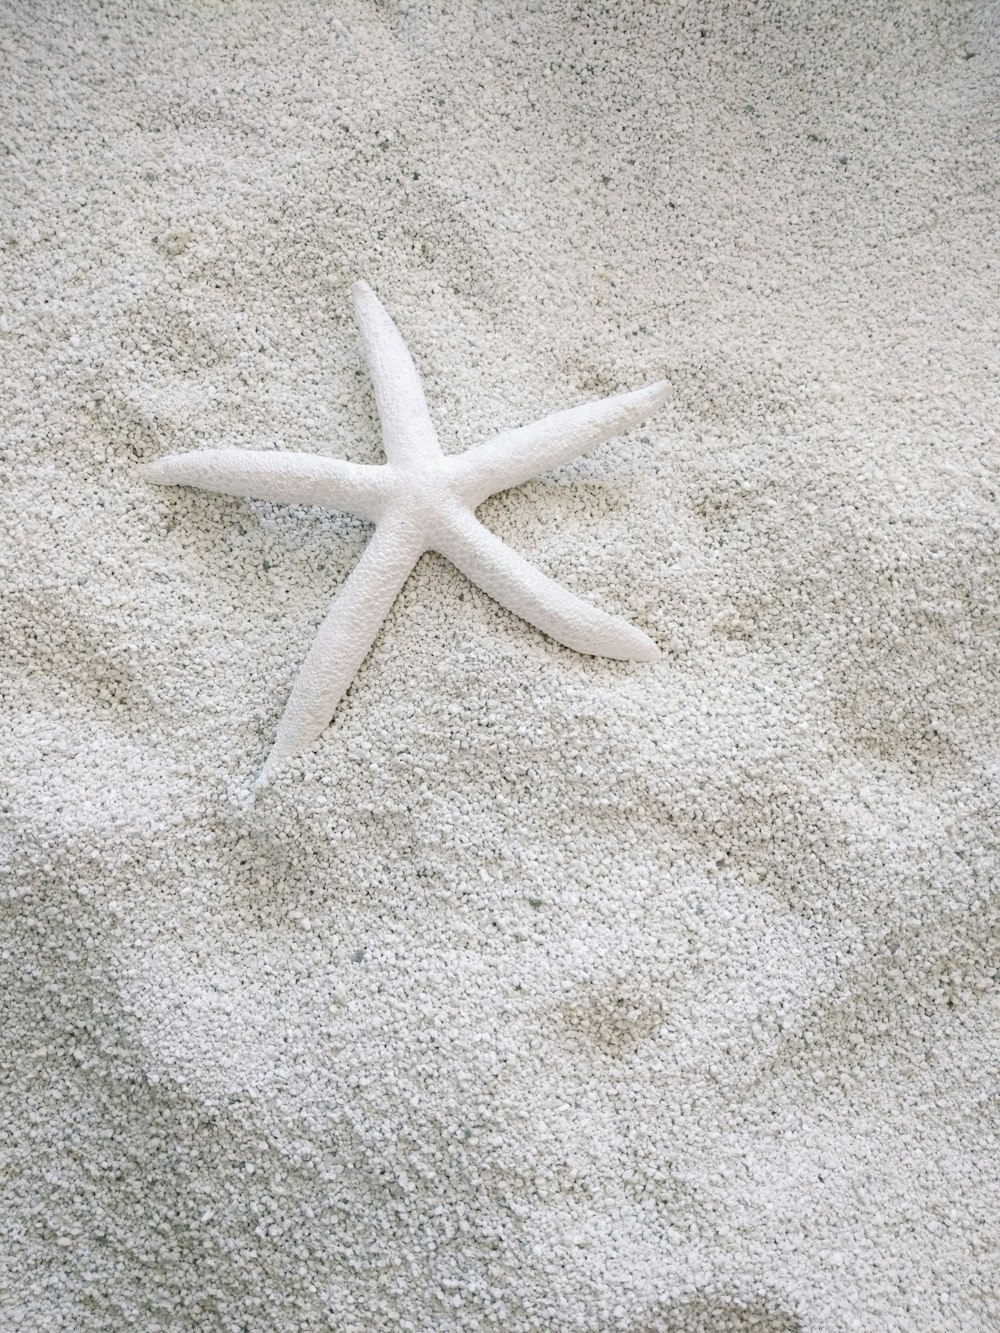 Estrella de mar blanca sobre arena blanca